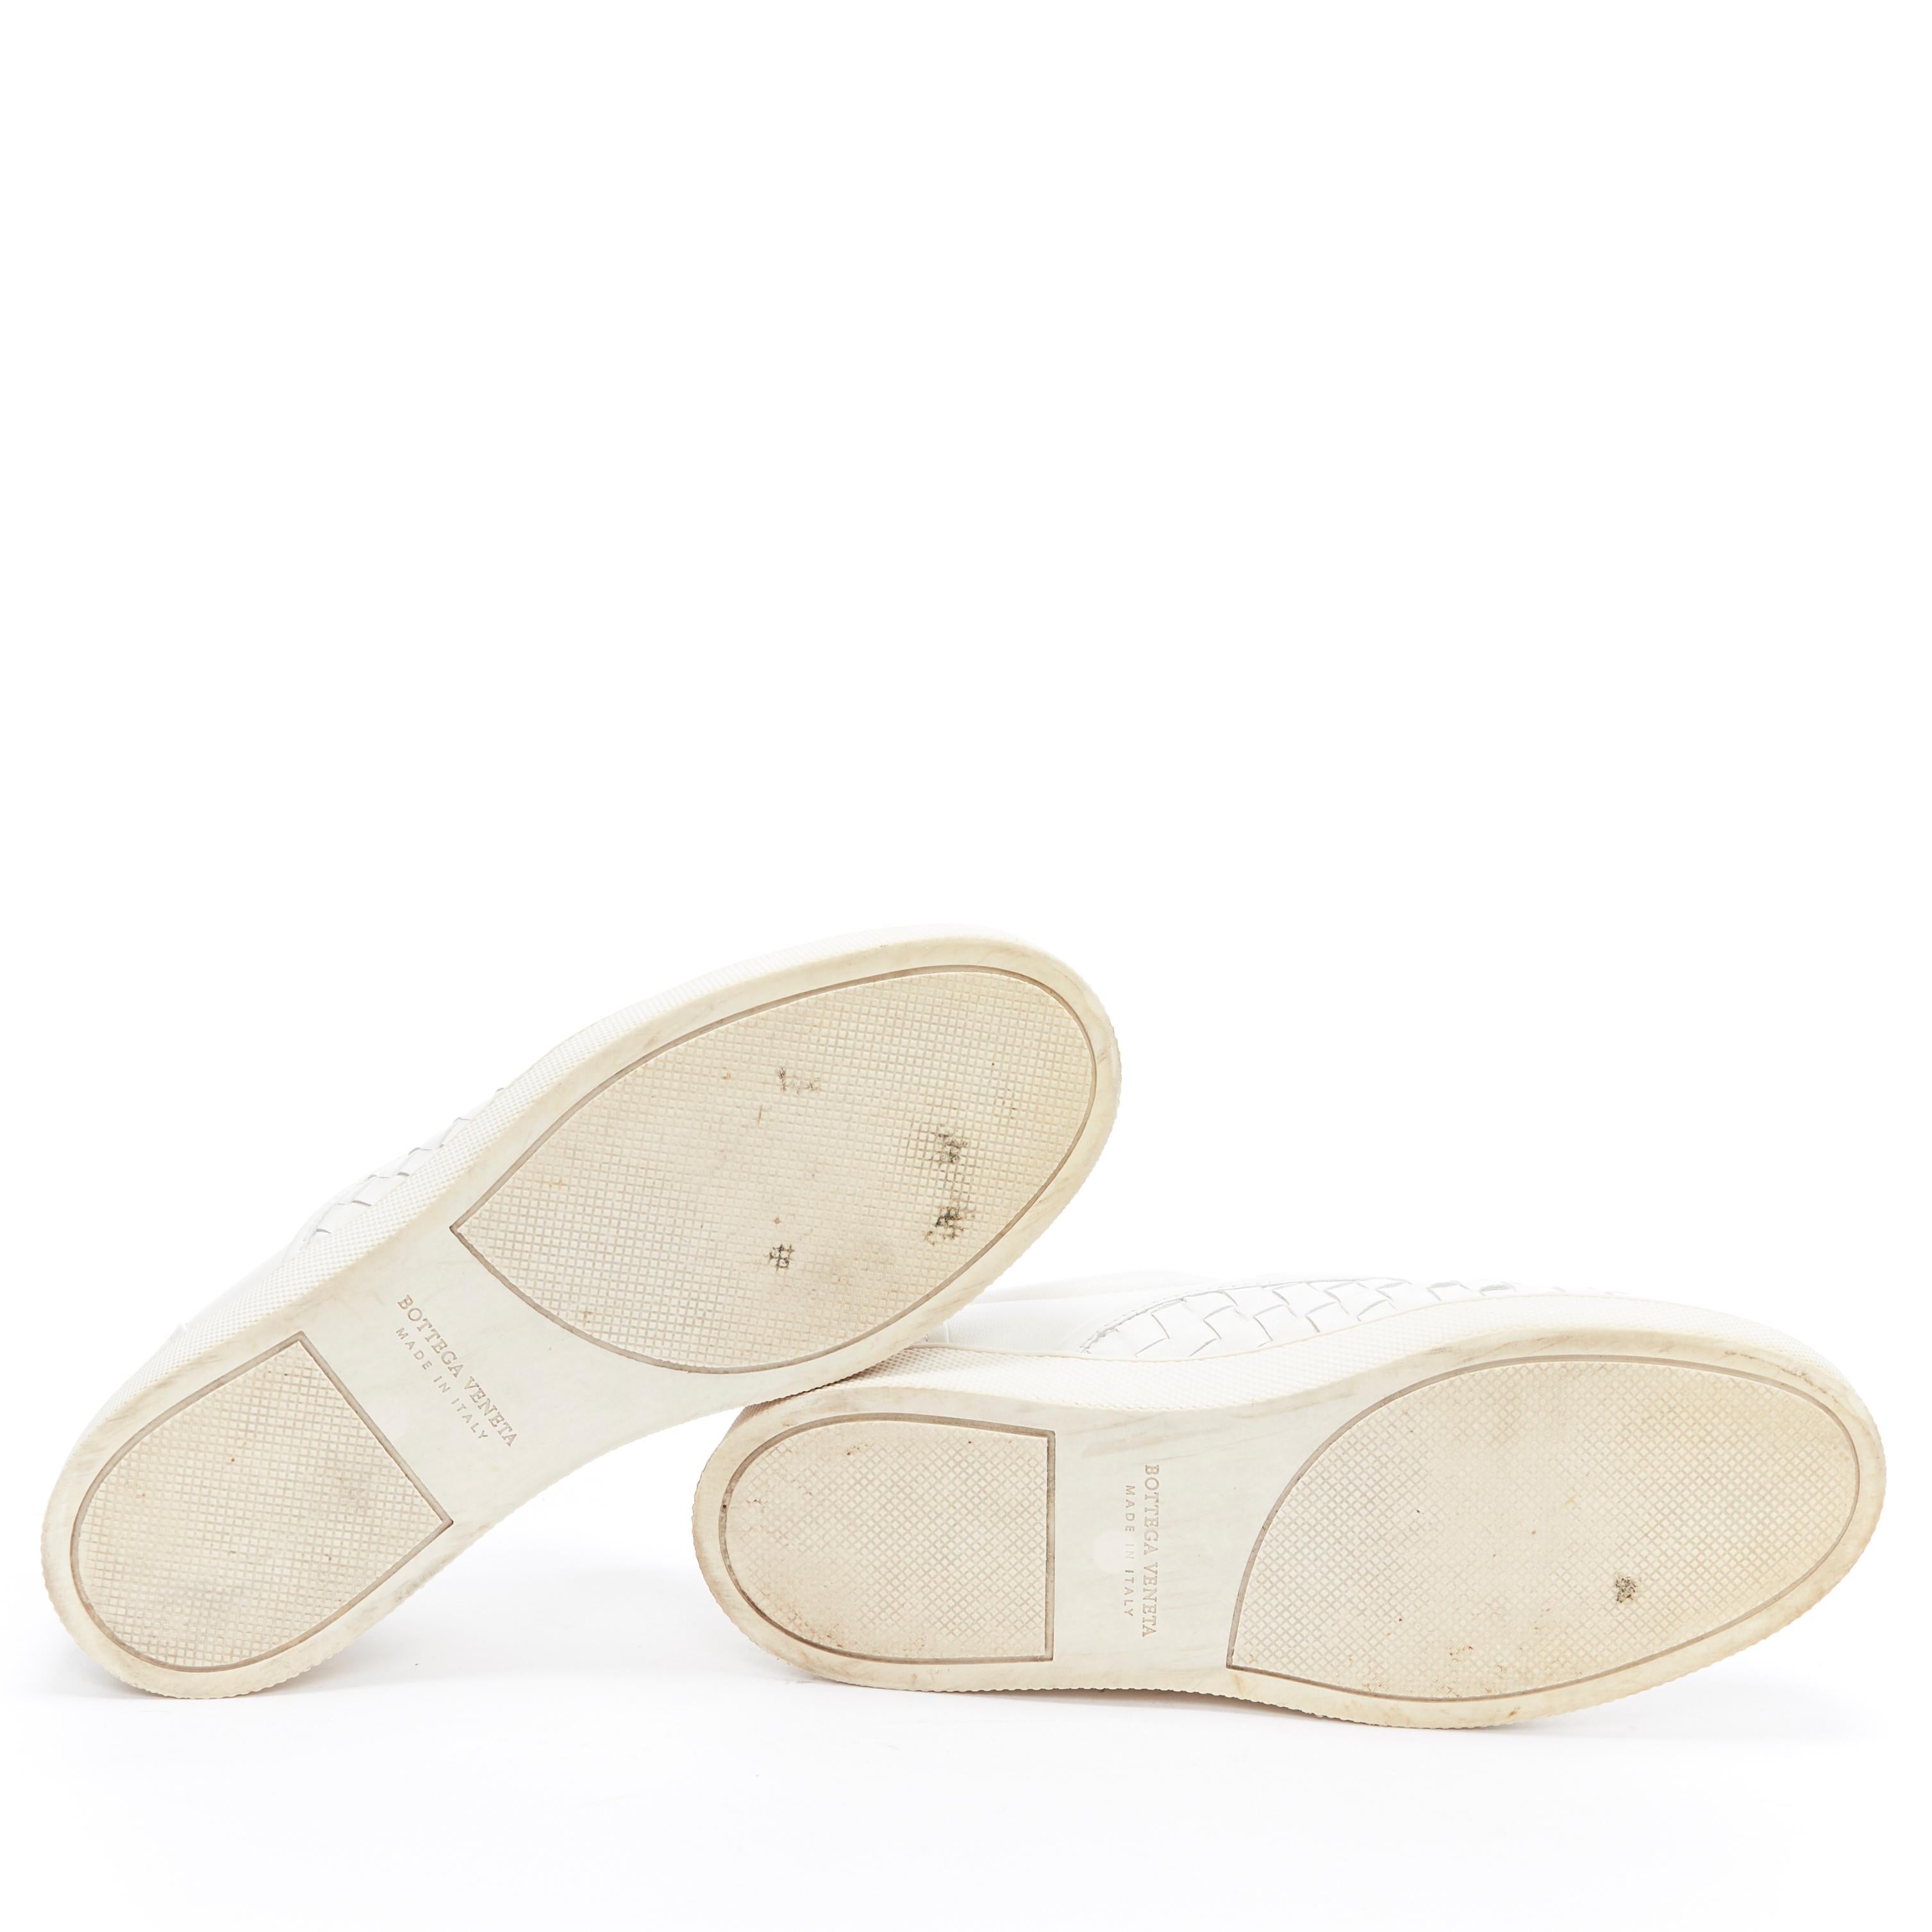 Gray BOTTEGA VENETA white intrecciato woven leather round toe skate shoes EU37.5